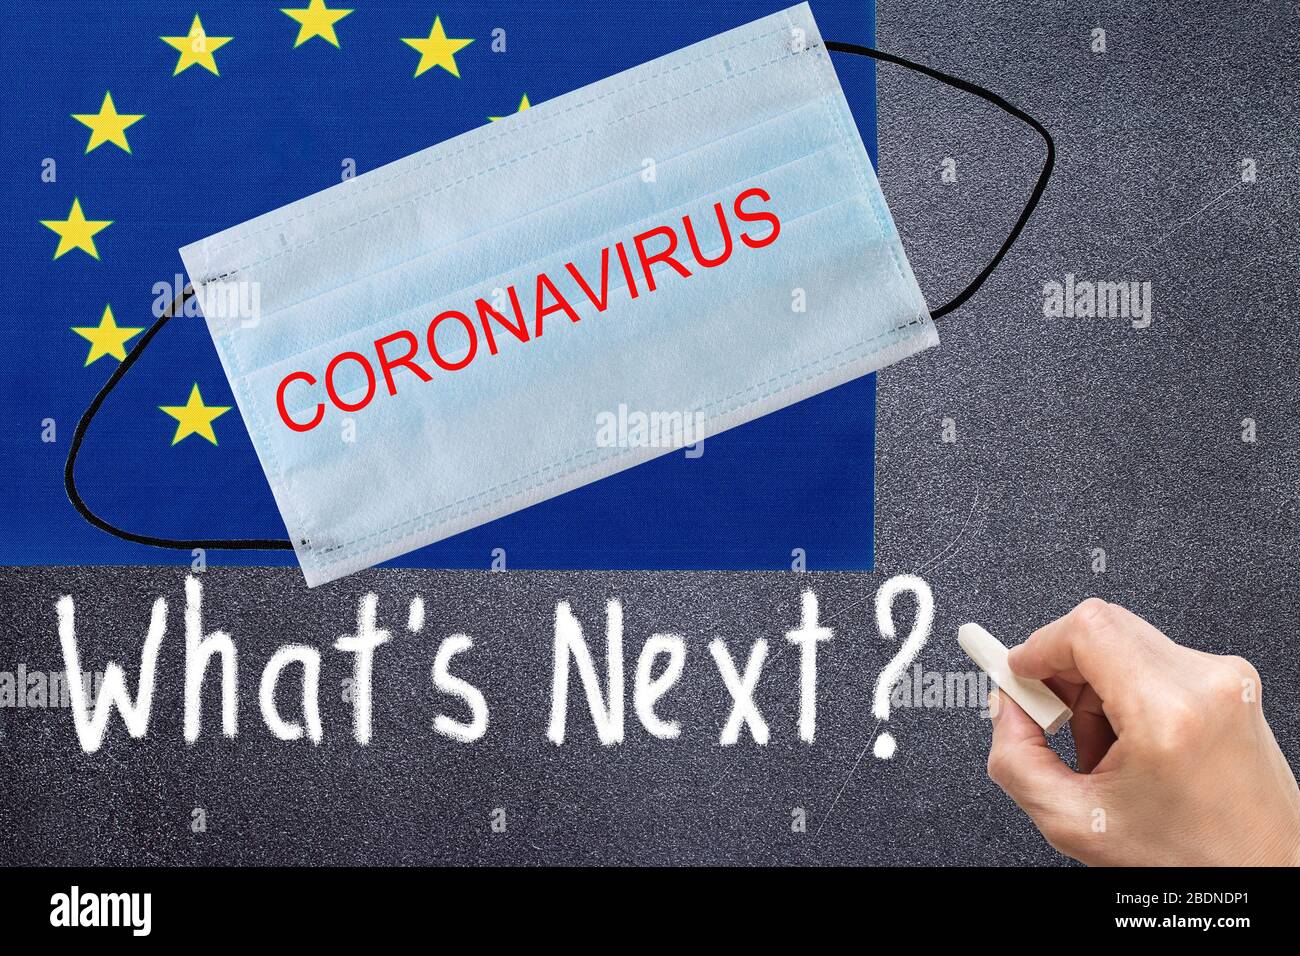 Drapeau syndical européen avec masque jetable et inscription AU CORONAVIRUS. Épidémie de coronavirus COVID-19 aux États-Unis d'Amérique. COVID-19 cor Banque D'Images